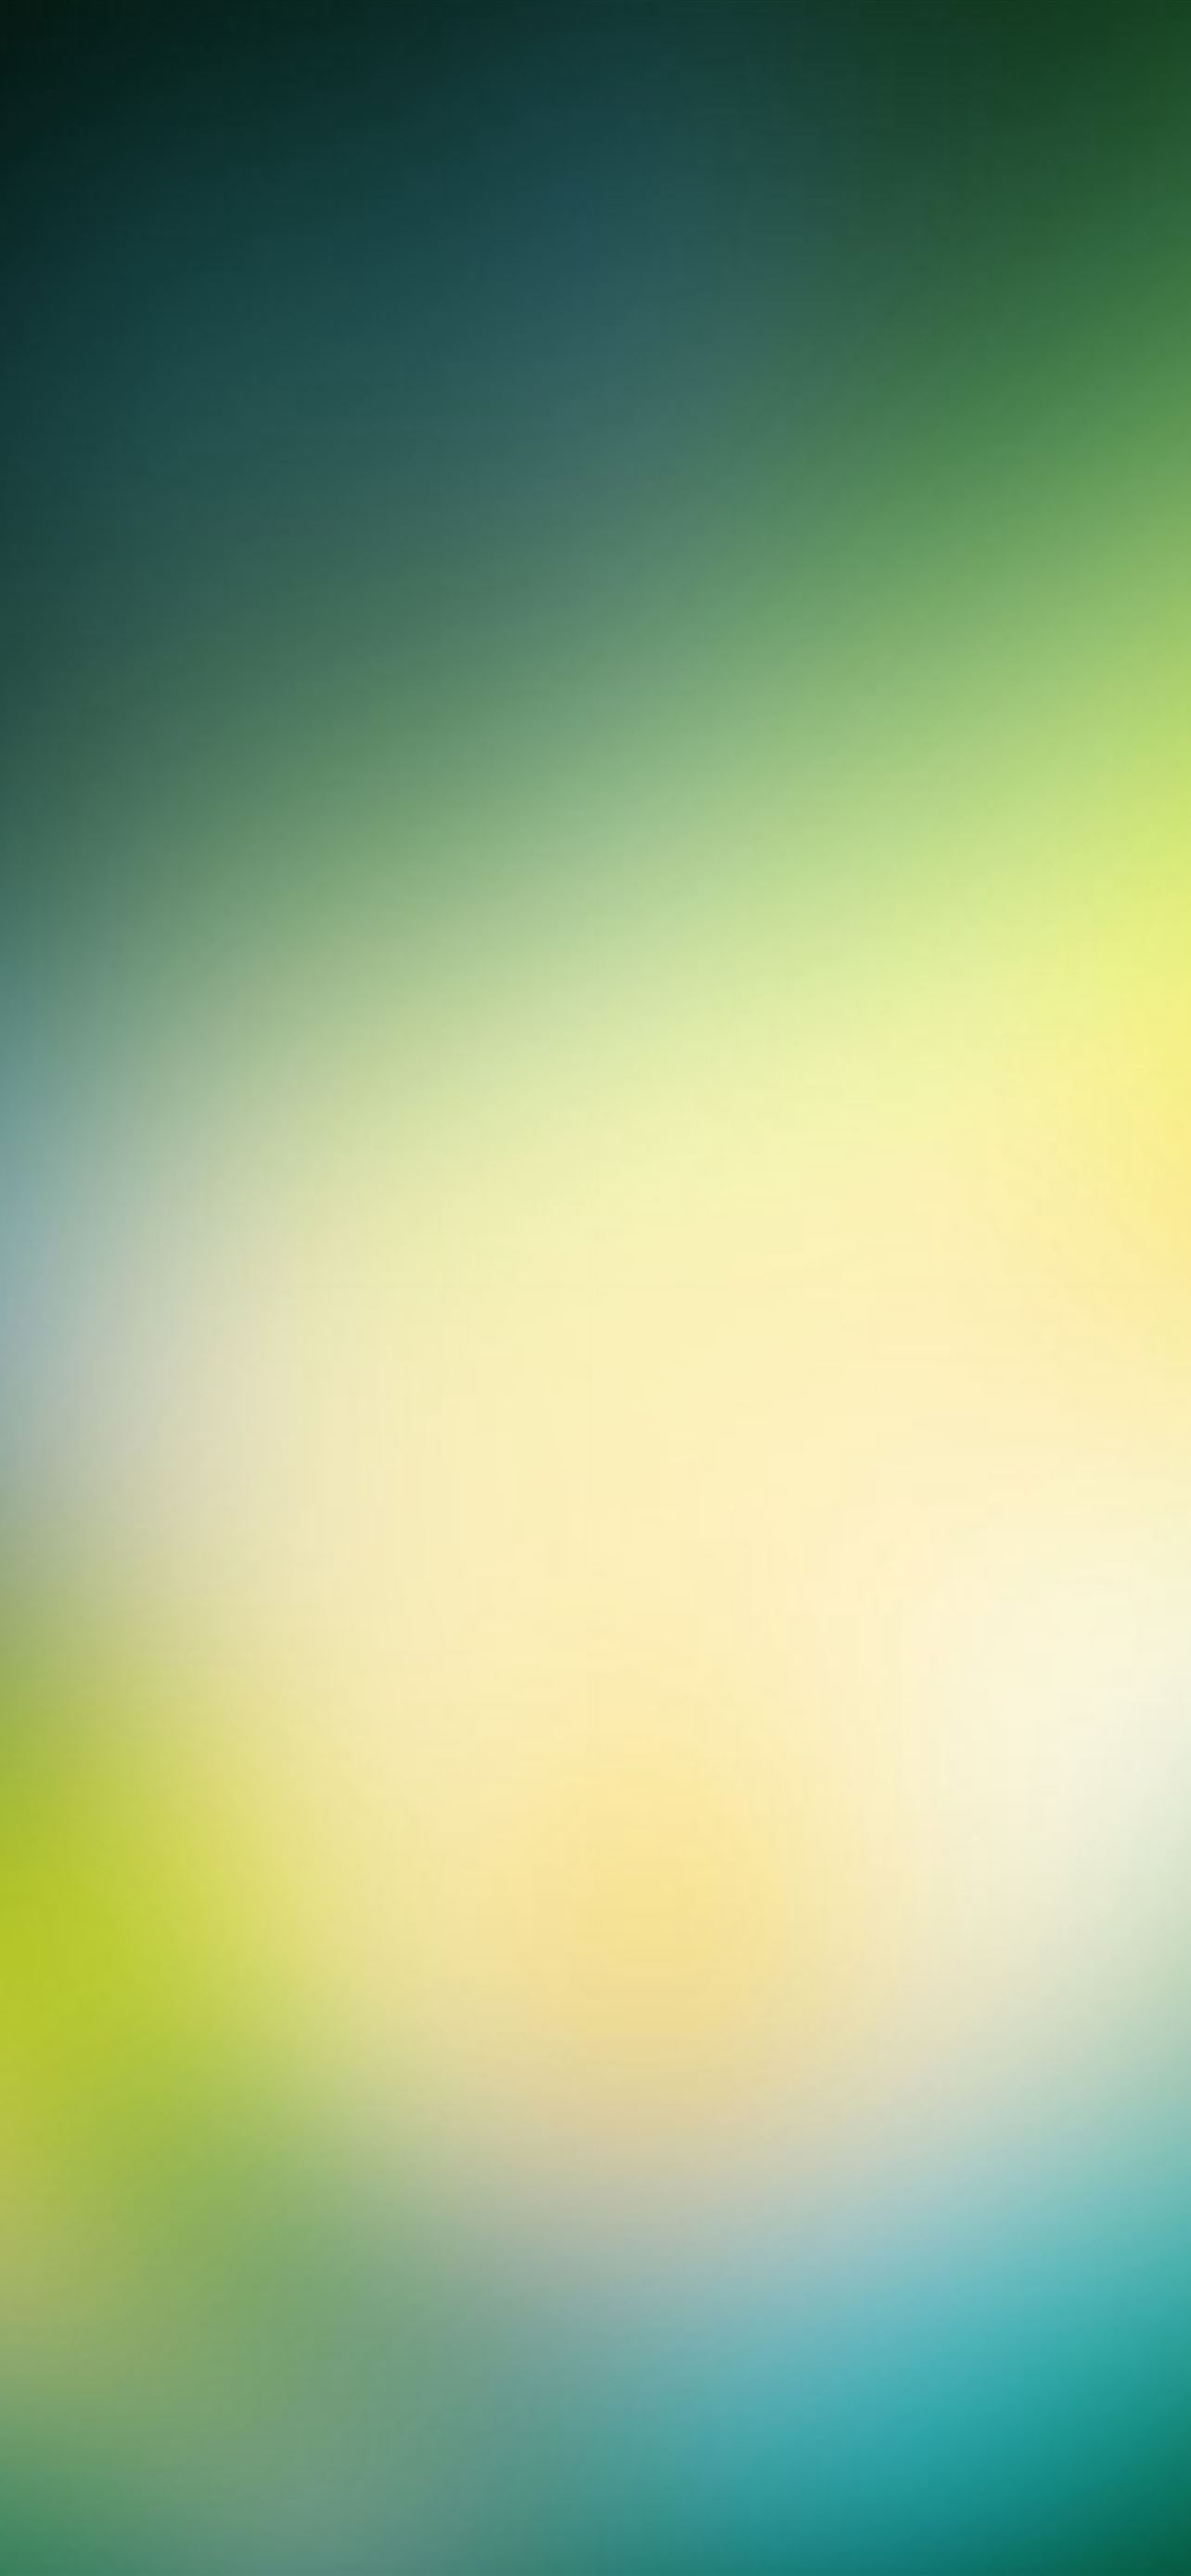 Hình nền màu xanh lá cây sẽ làm cho chiếc iPhone của bạn thêm phần tươi sáng và bắt mắt hơn. Với nhiều loại hình ảnh khác nhau, hình nền màu xanh lá cây sẽ giúp cho chiếc iPhone của bạn trở nên độc đáo và tạo nên nét đẹp riêng biệt. Hãy cùng khám phá những tuyệt phẩm này từ các nhà thiết kế chuyên nghiệp.